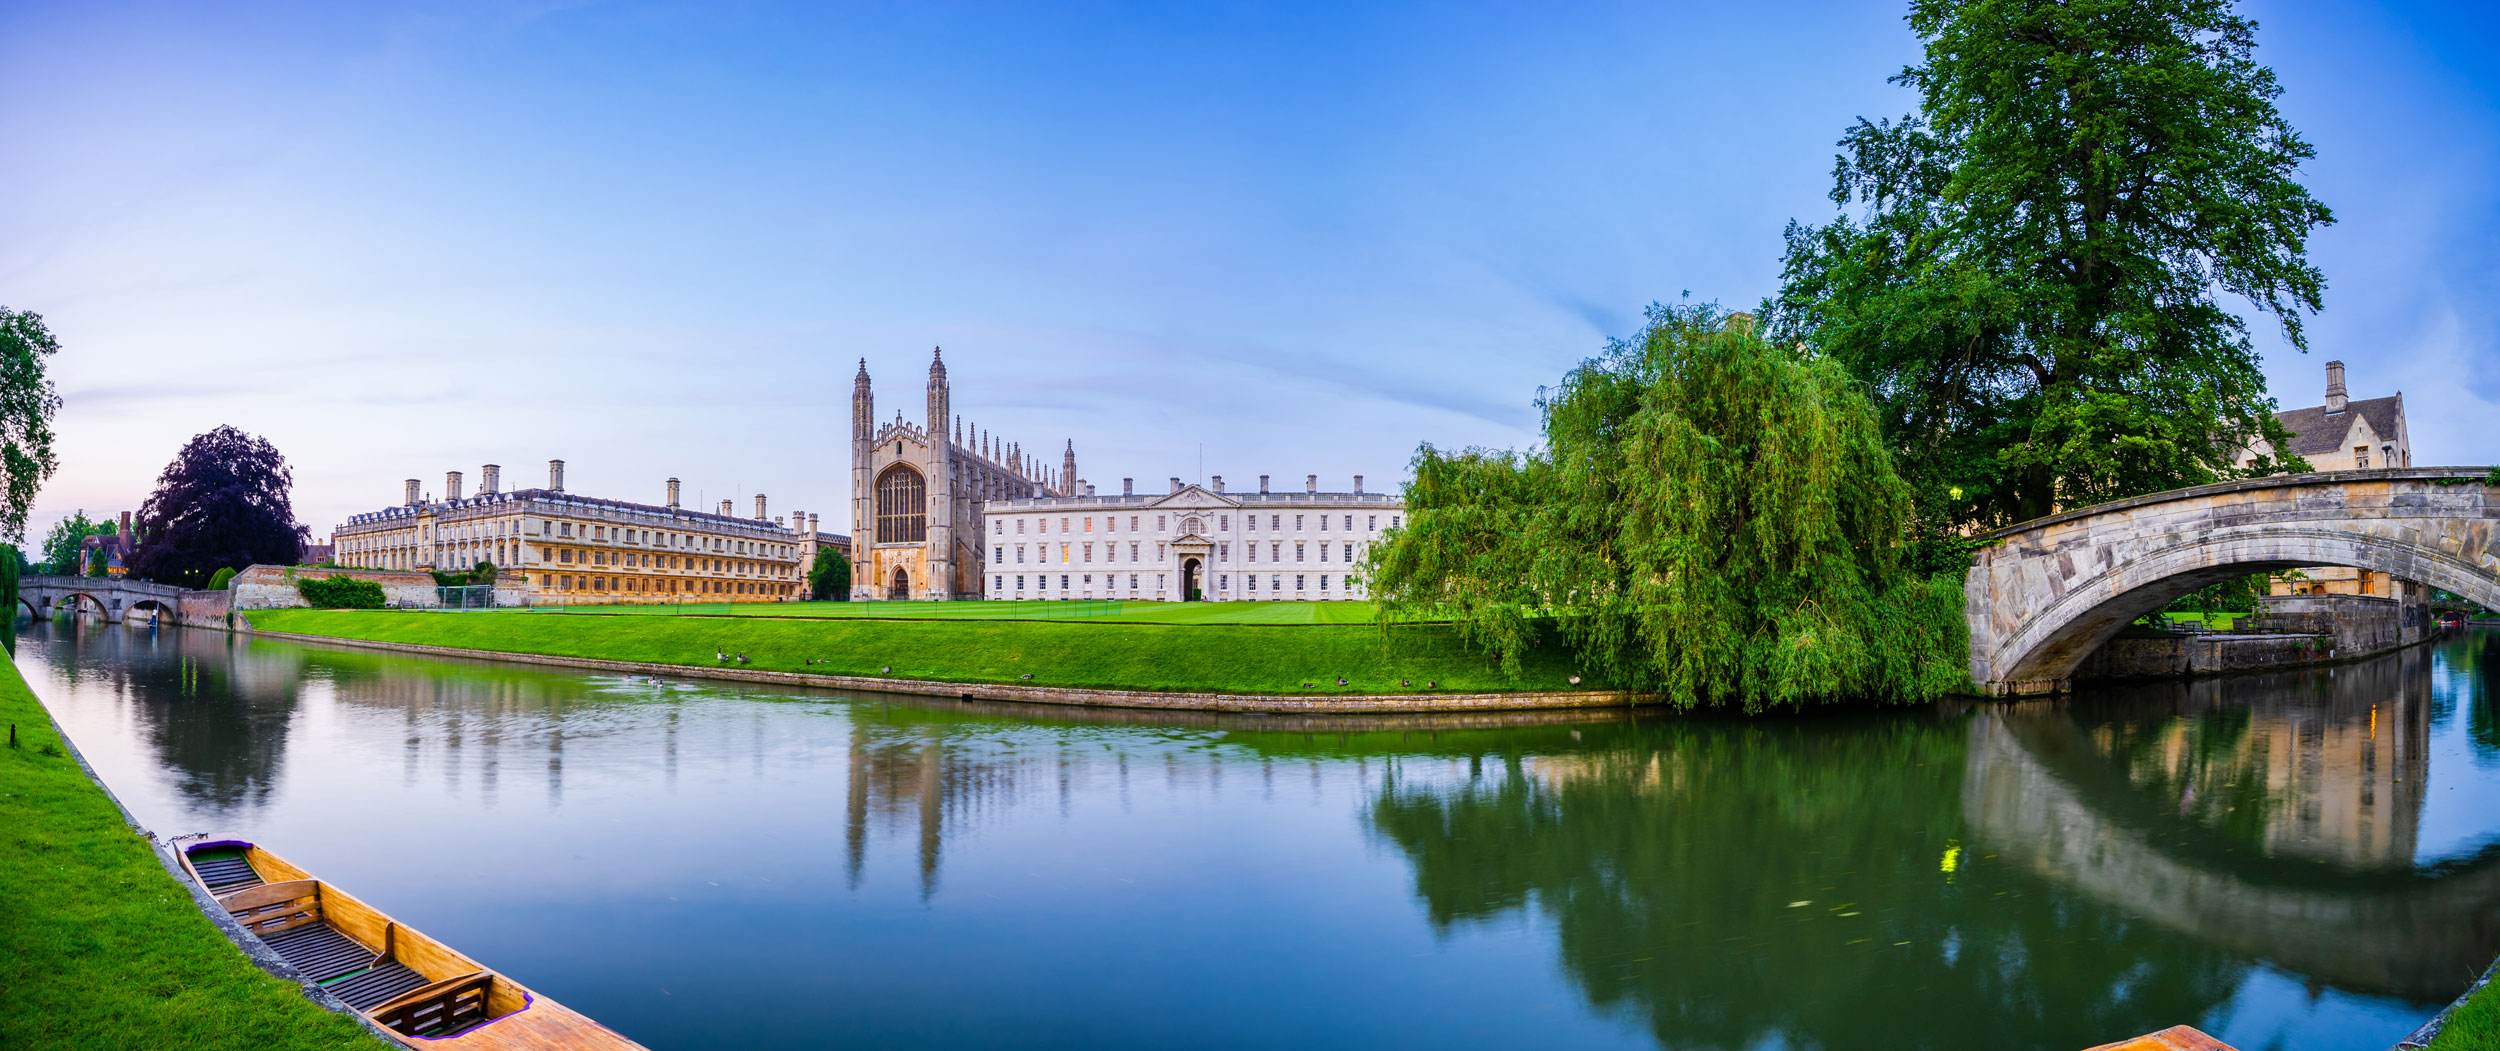 Oxford Royale Academy - Cambridge Yaz Okulu Okul Fotoğrafı 1